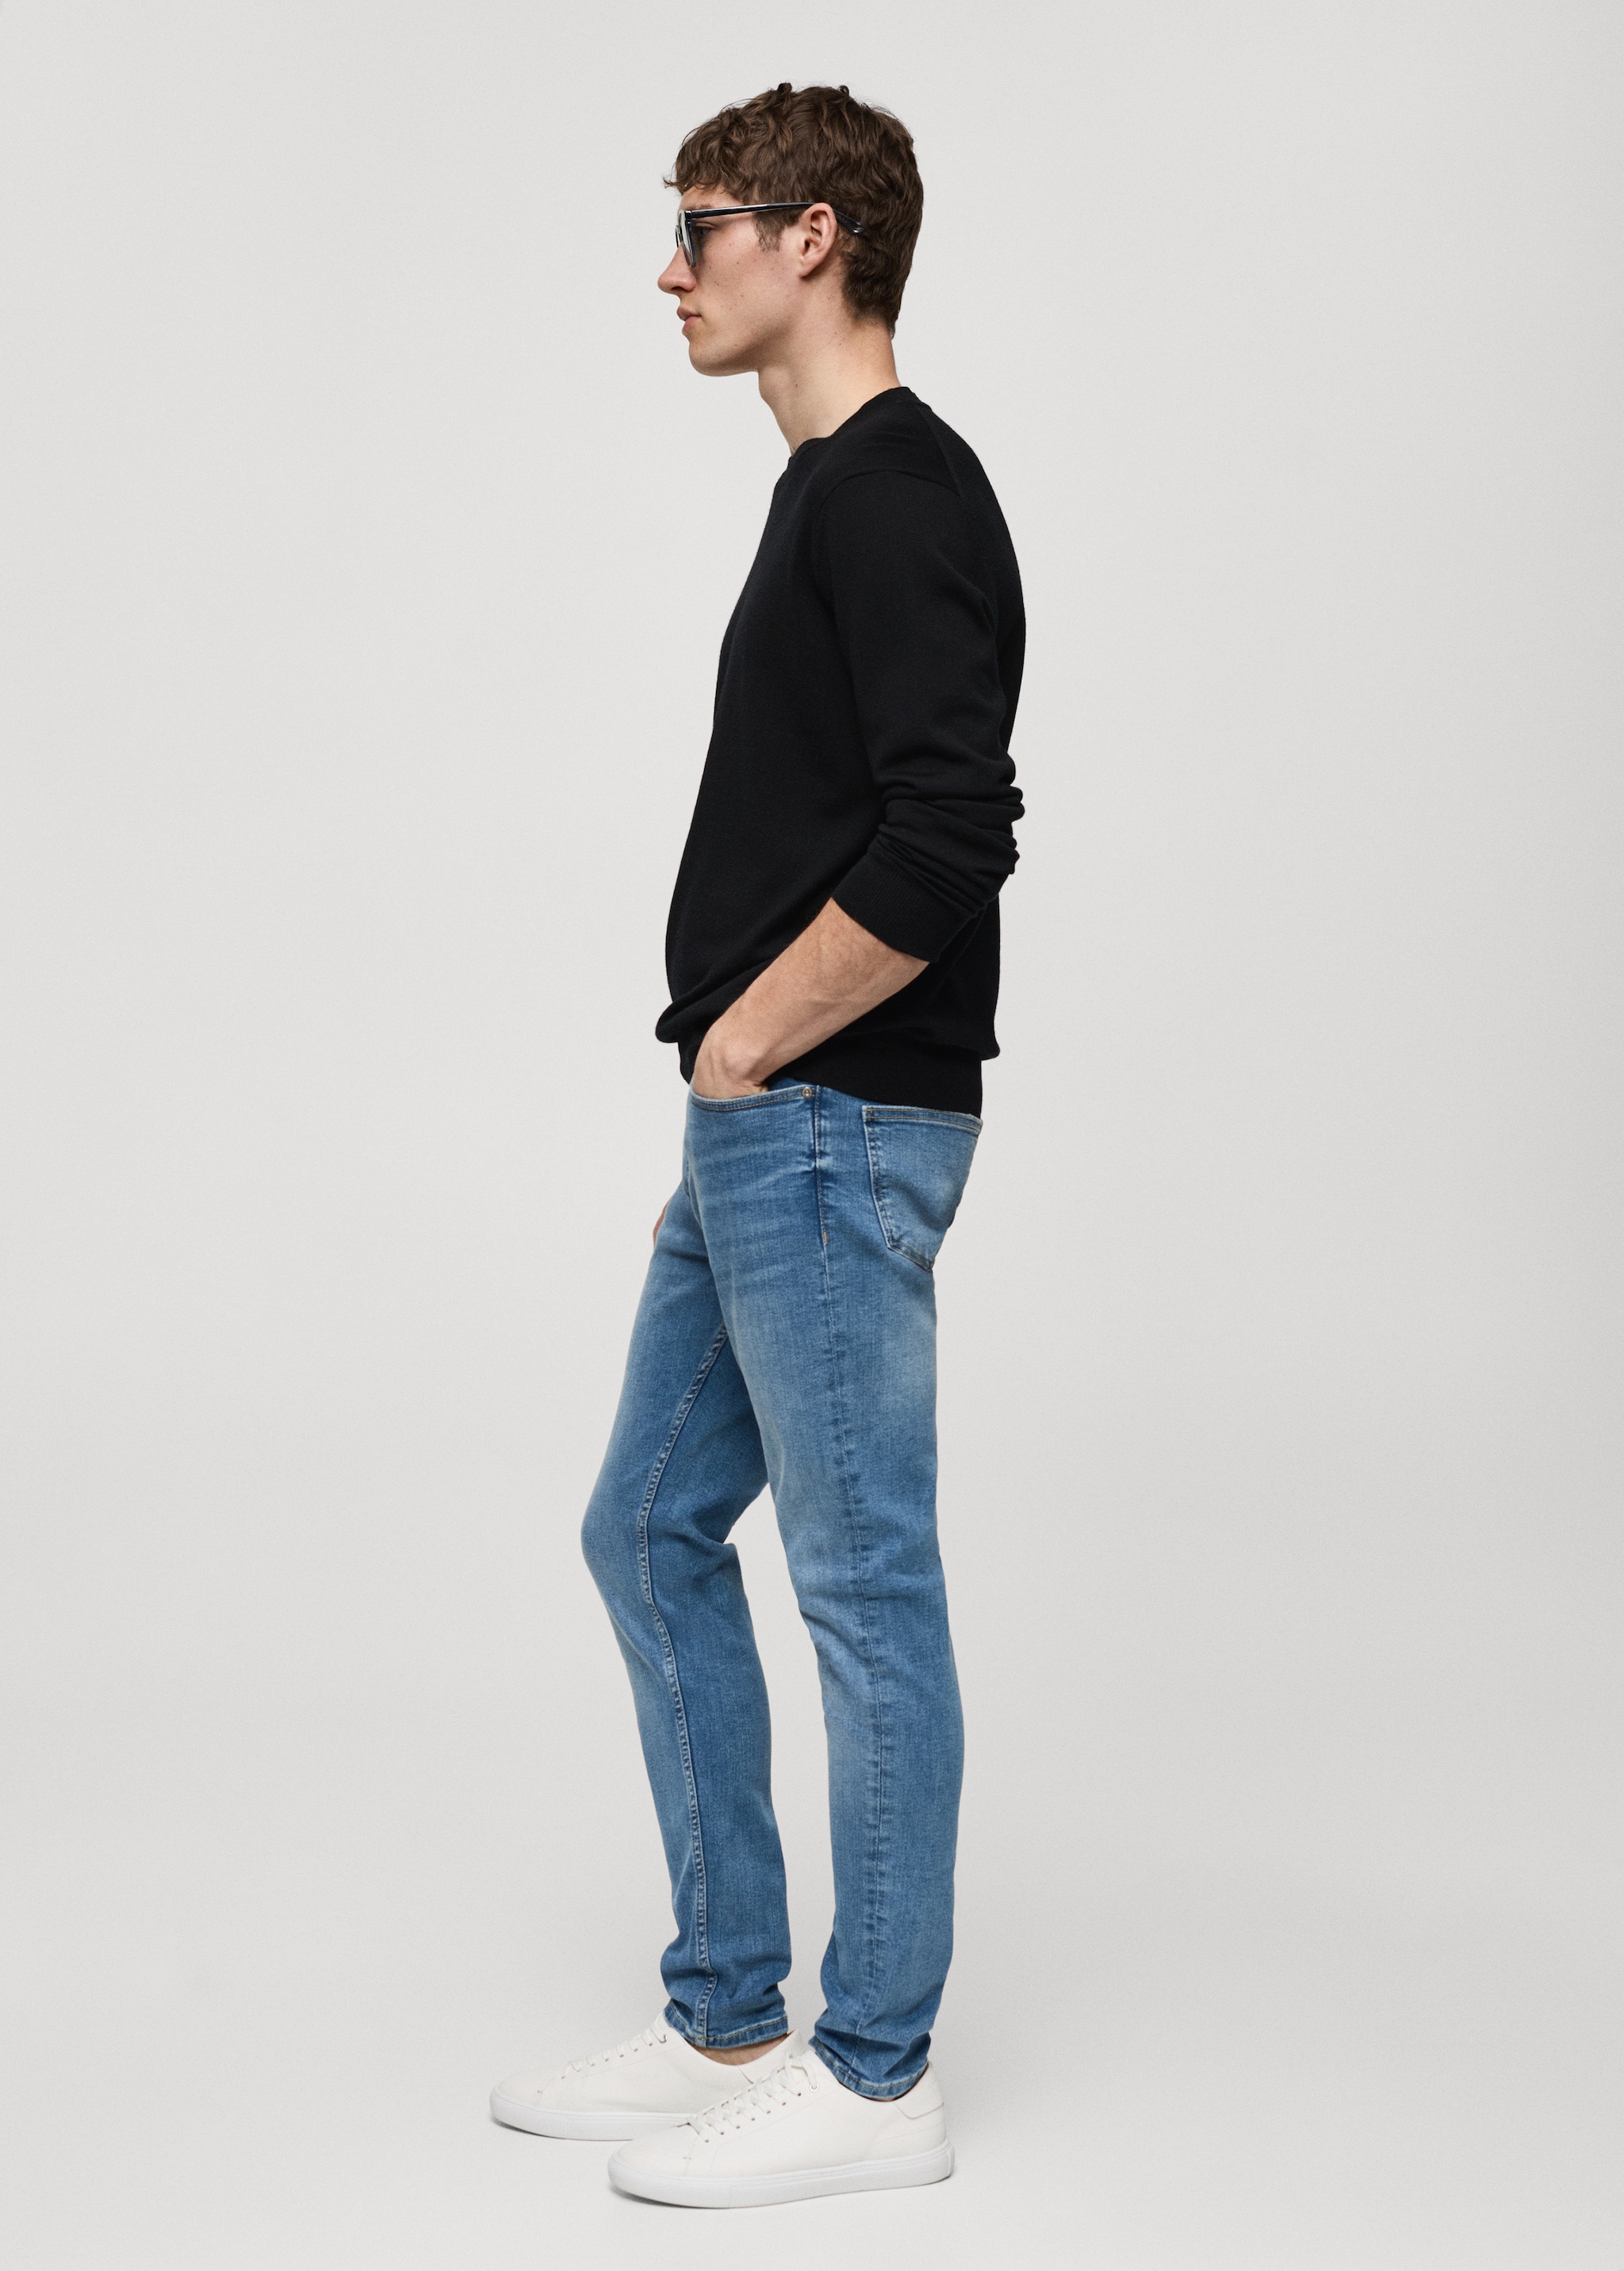 Jeans Jude skinny-fit - Dettaglio dell'articolo 2